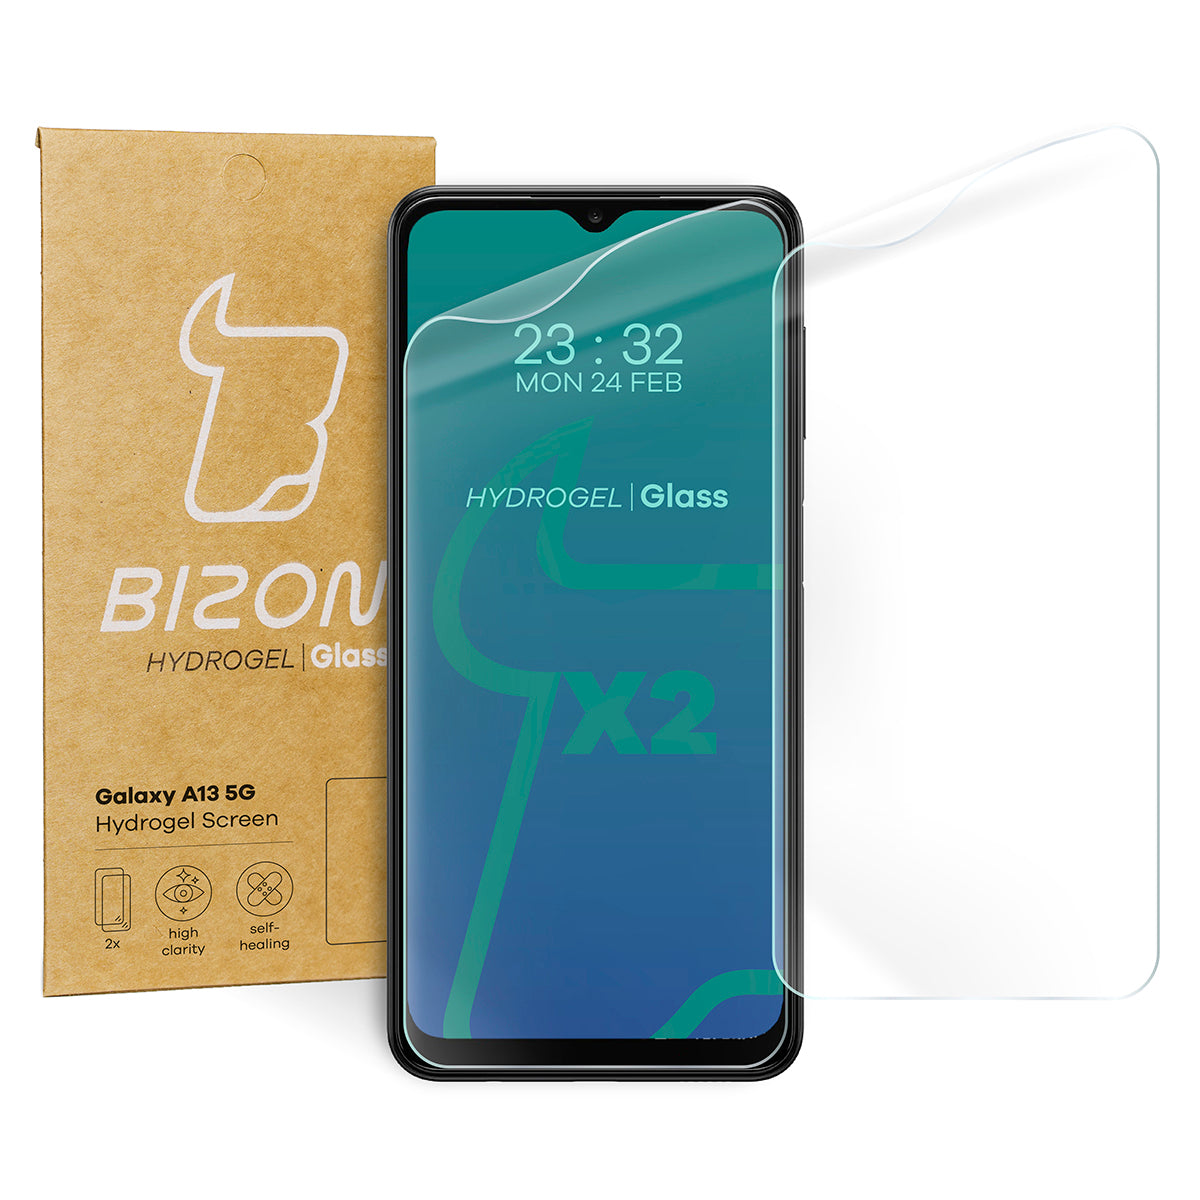 Hydrogel Folie für den Bildschirm Bizon Glass Hydrogel, Galaxy A13 5G, 2 Stück